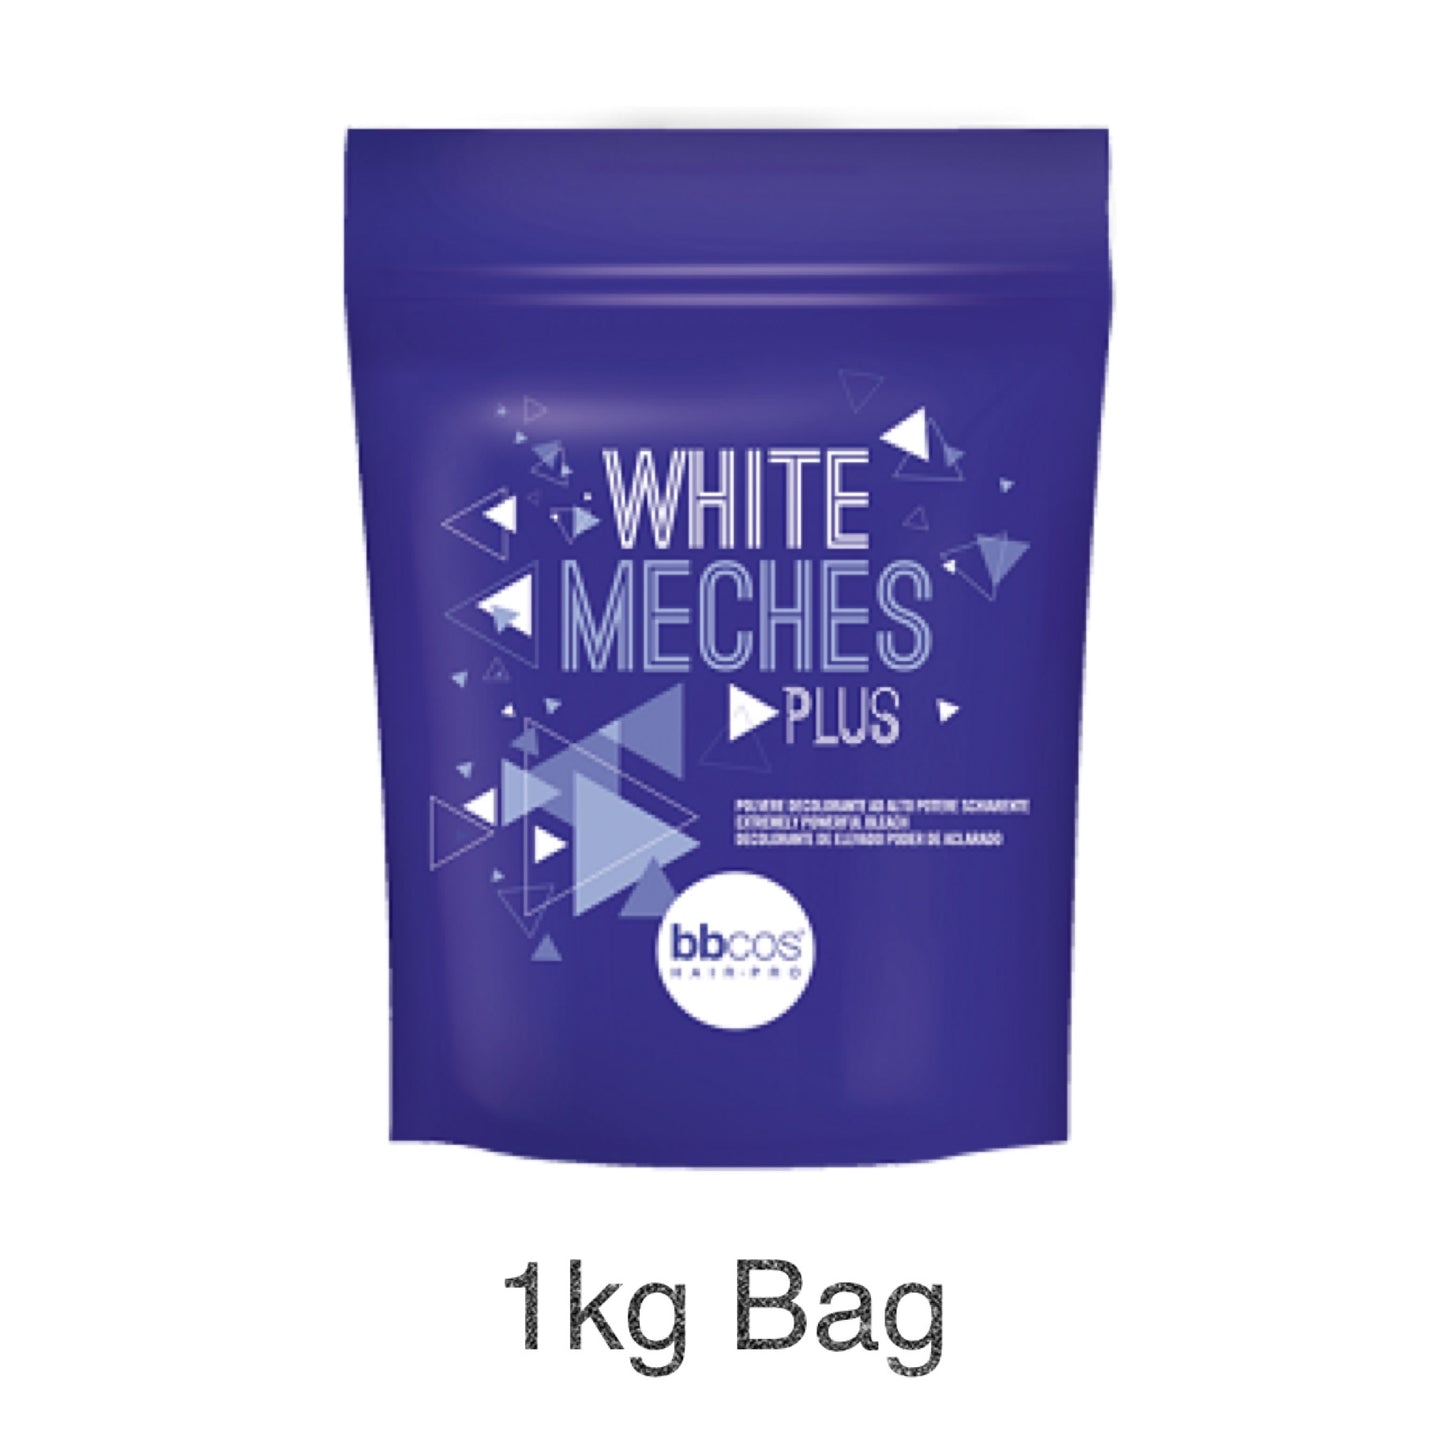 MHP- Italian White Meches Bleach Powder (6 Levels Lift)